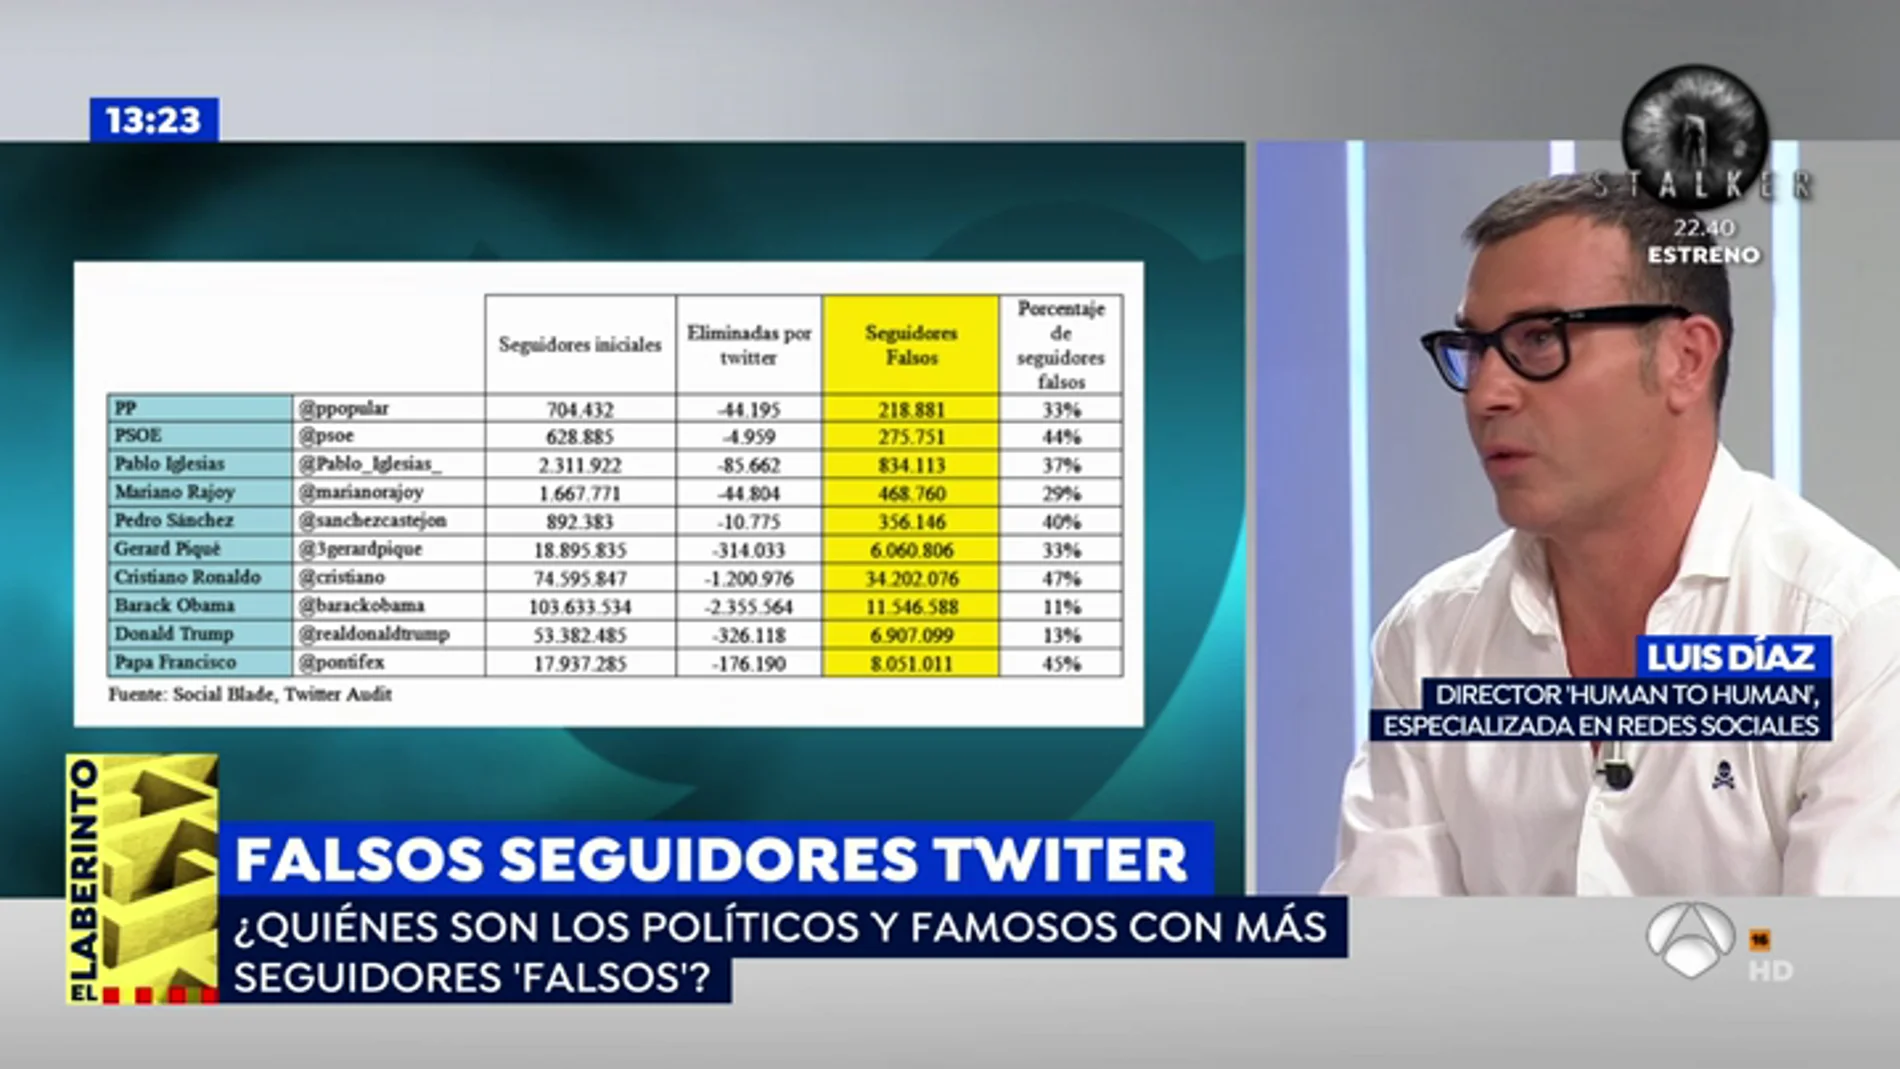 Pablo Iglesias, Mariano Rajoy o Cristiano Ronaldo, en la lista de personajes con más seguidores falsos de Twitter